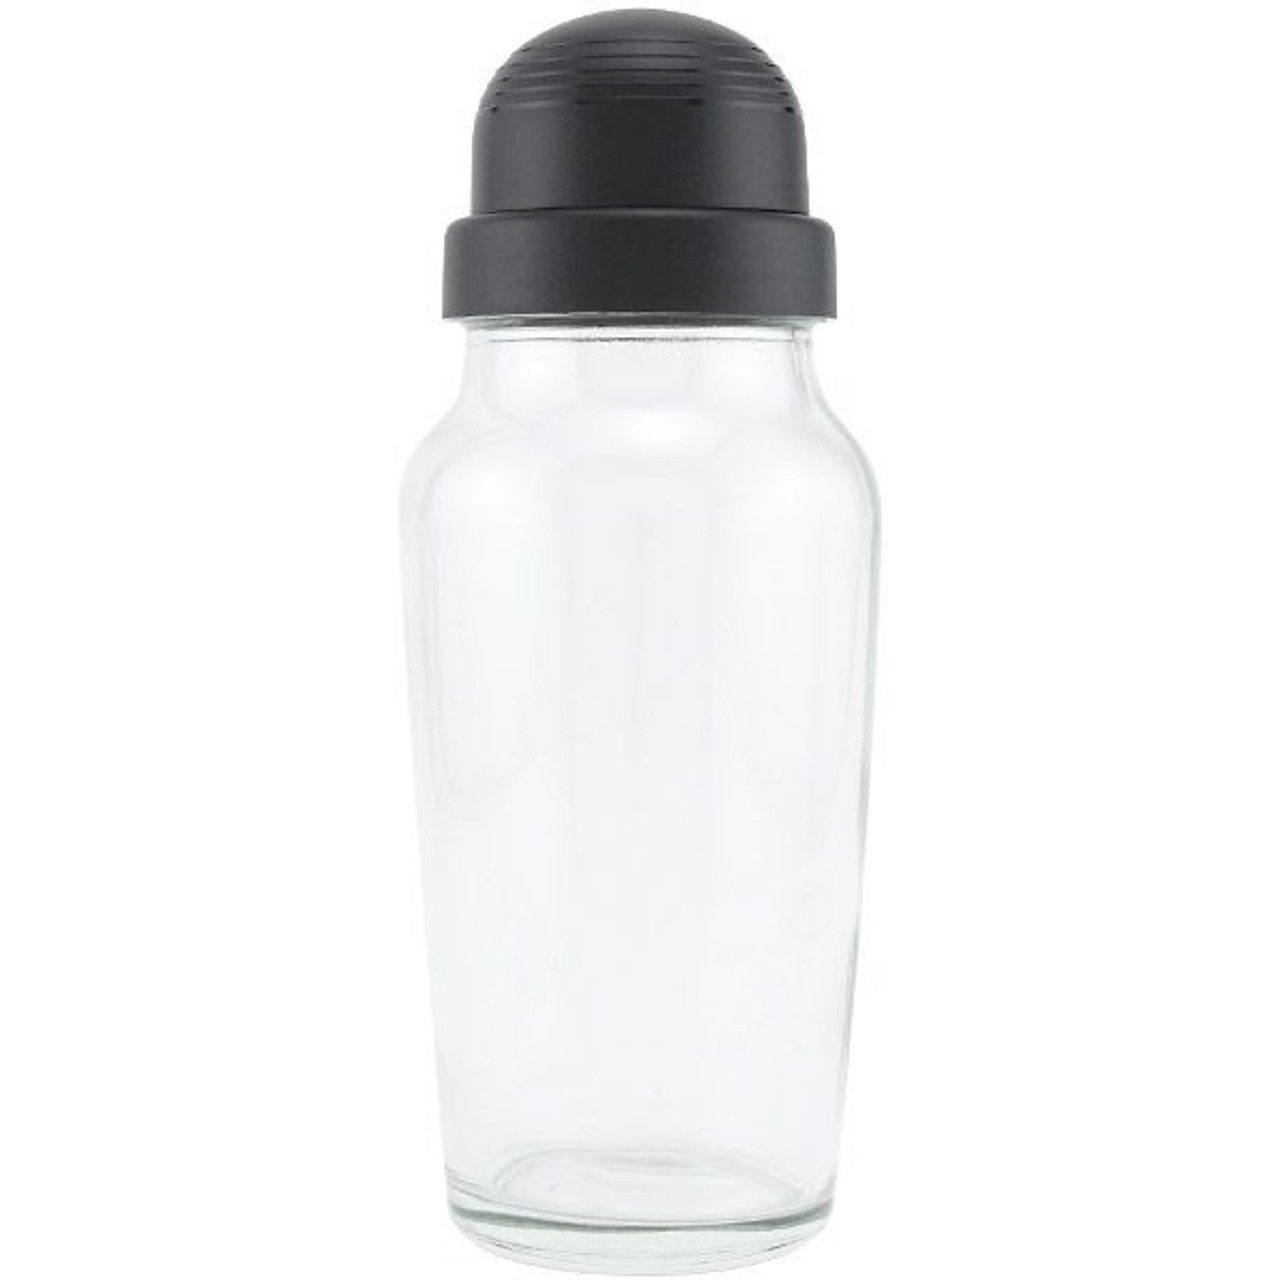 Glass Shaker Bottle